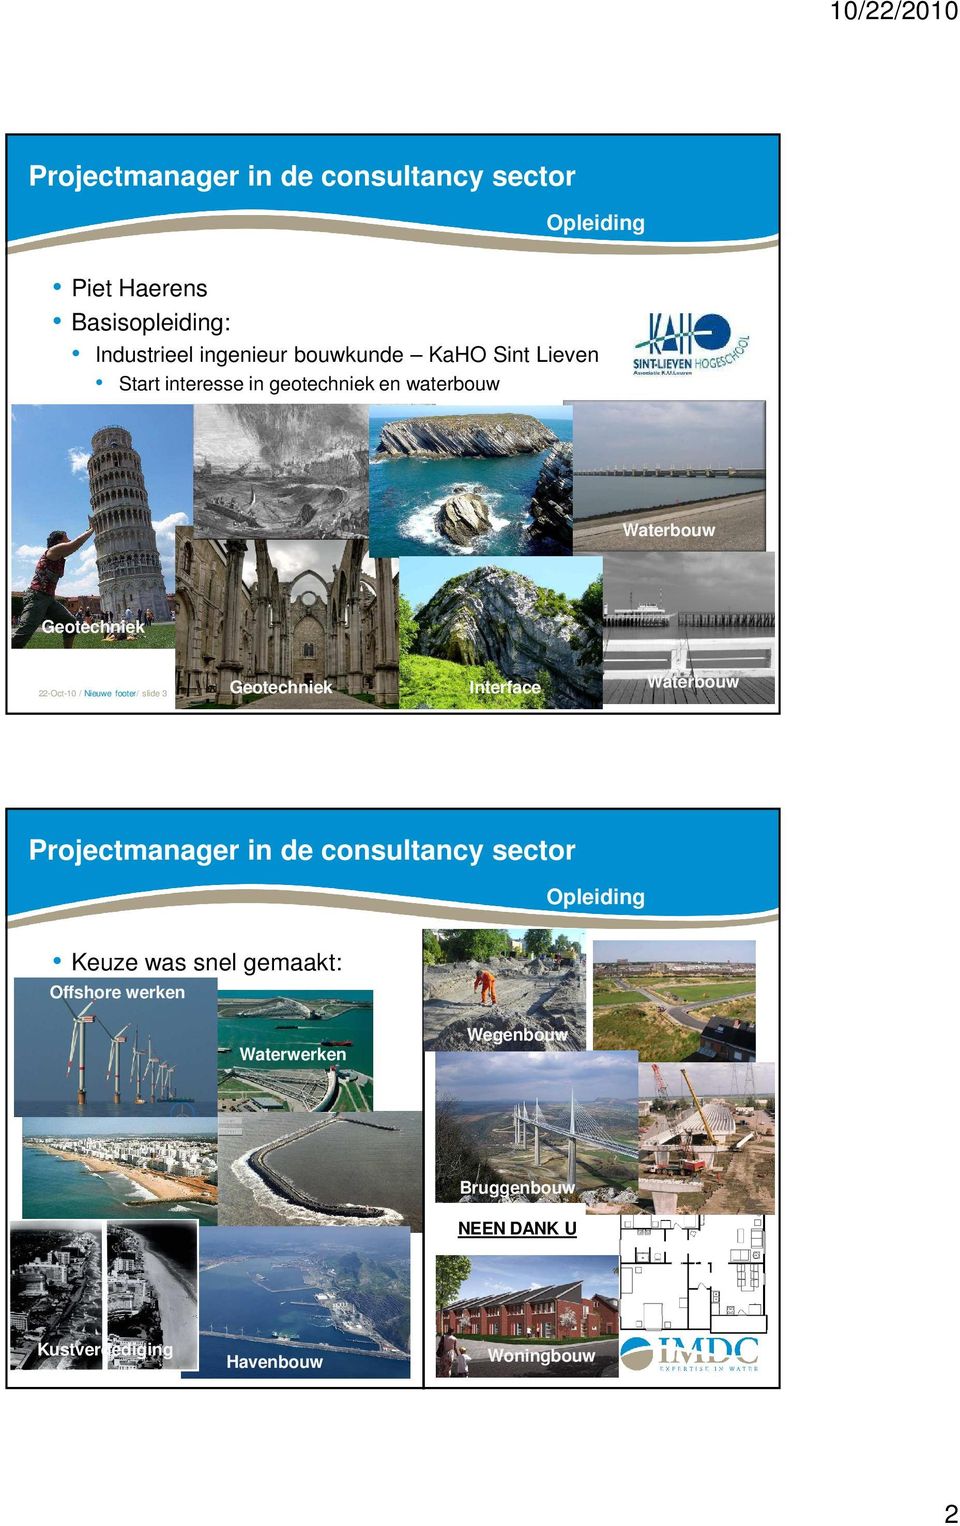 Geotechniek Interface Waterbouw Opleiding Keuze was snel gemaakt: Offshore werken Waterwerken